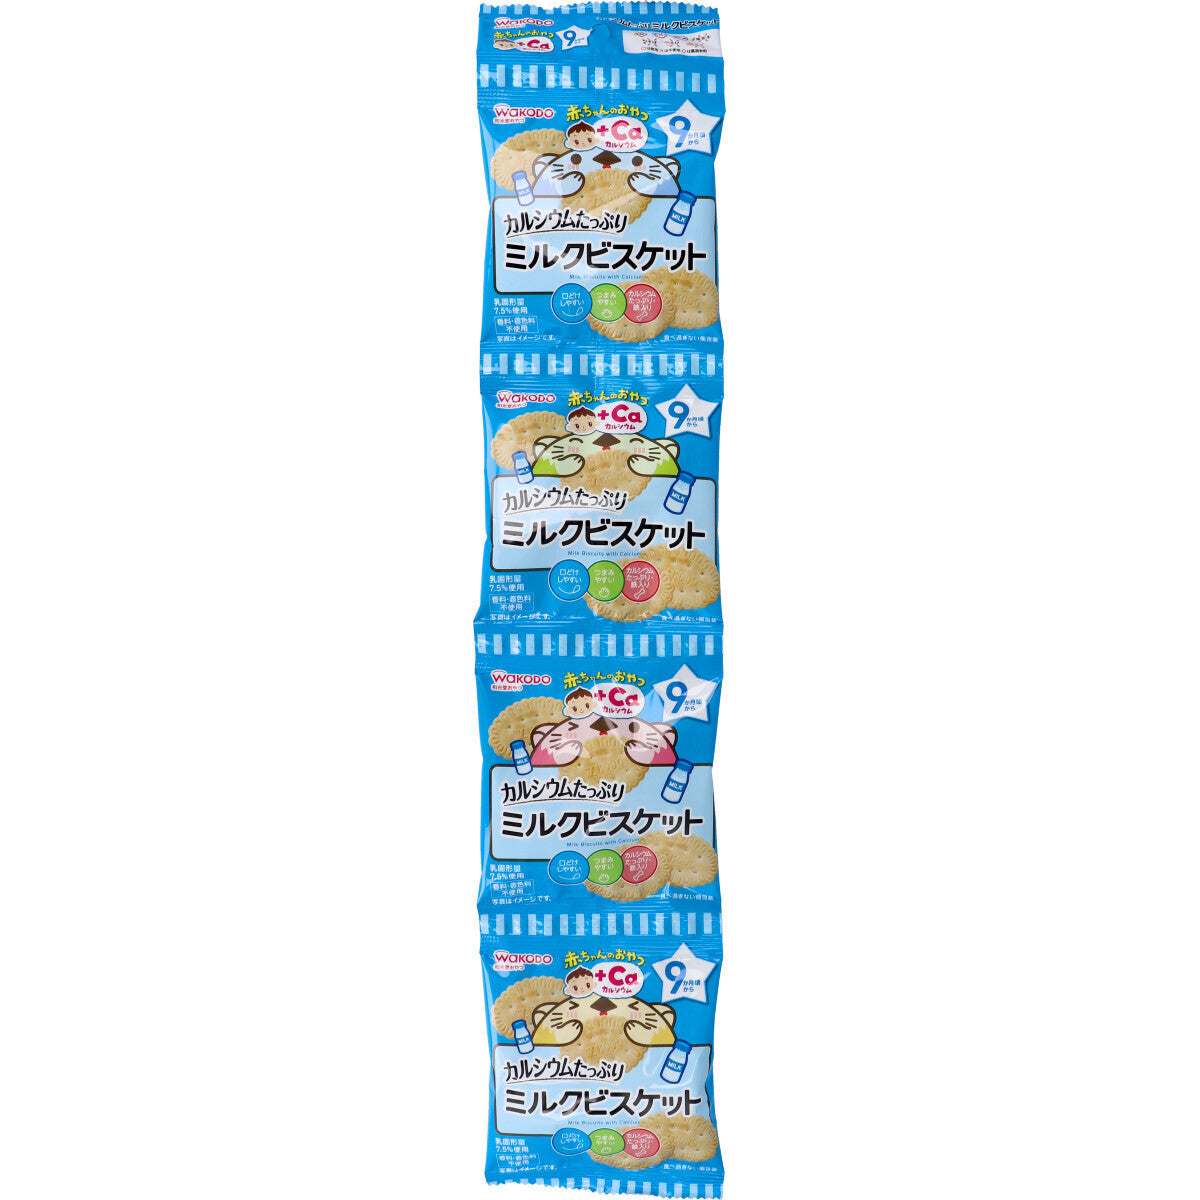 Wakodo - Baby Snacks + Ca Milk Biscuits with Calcium 10g x 4 Bags